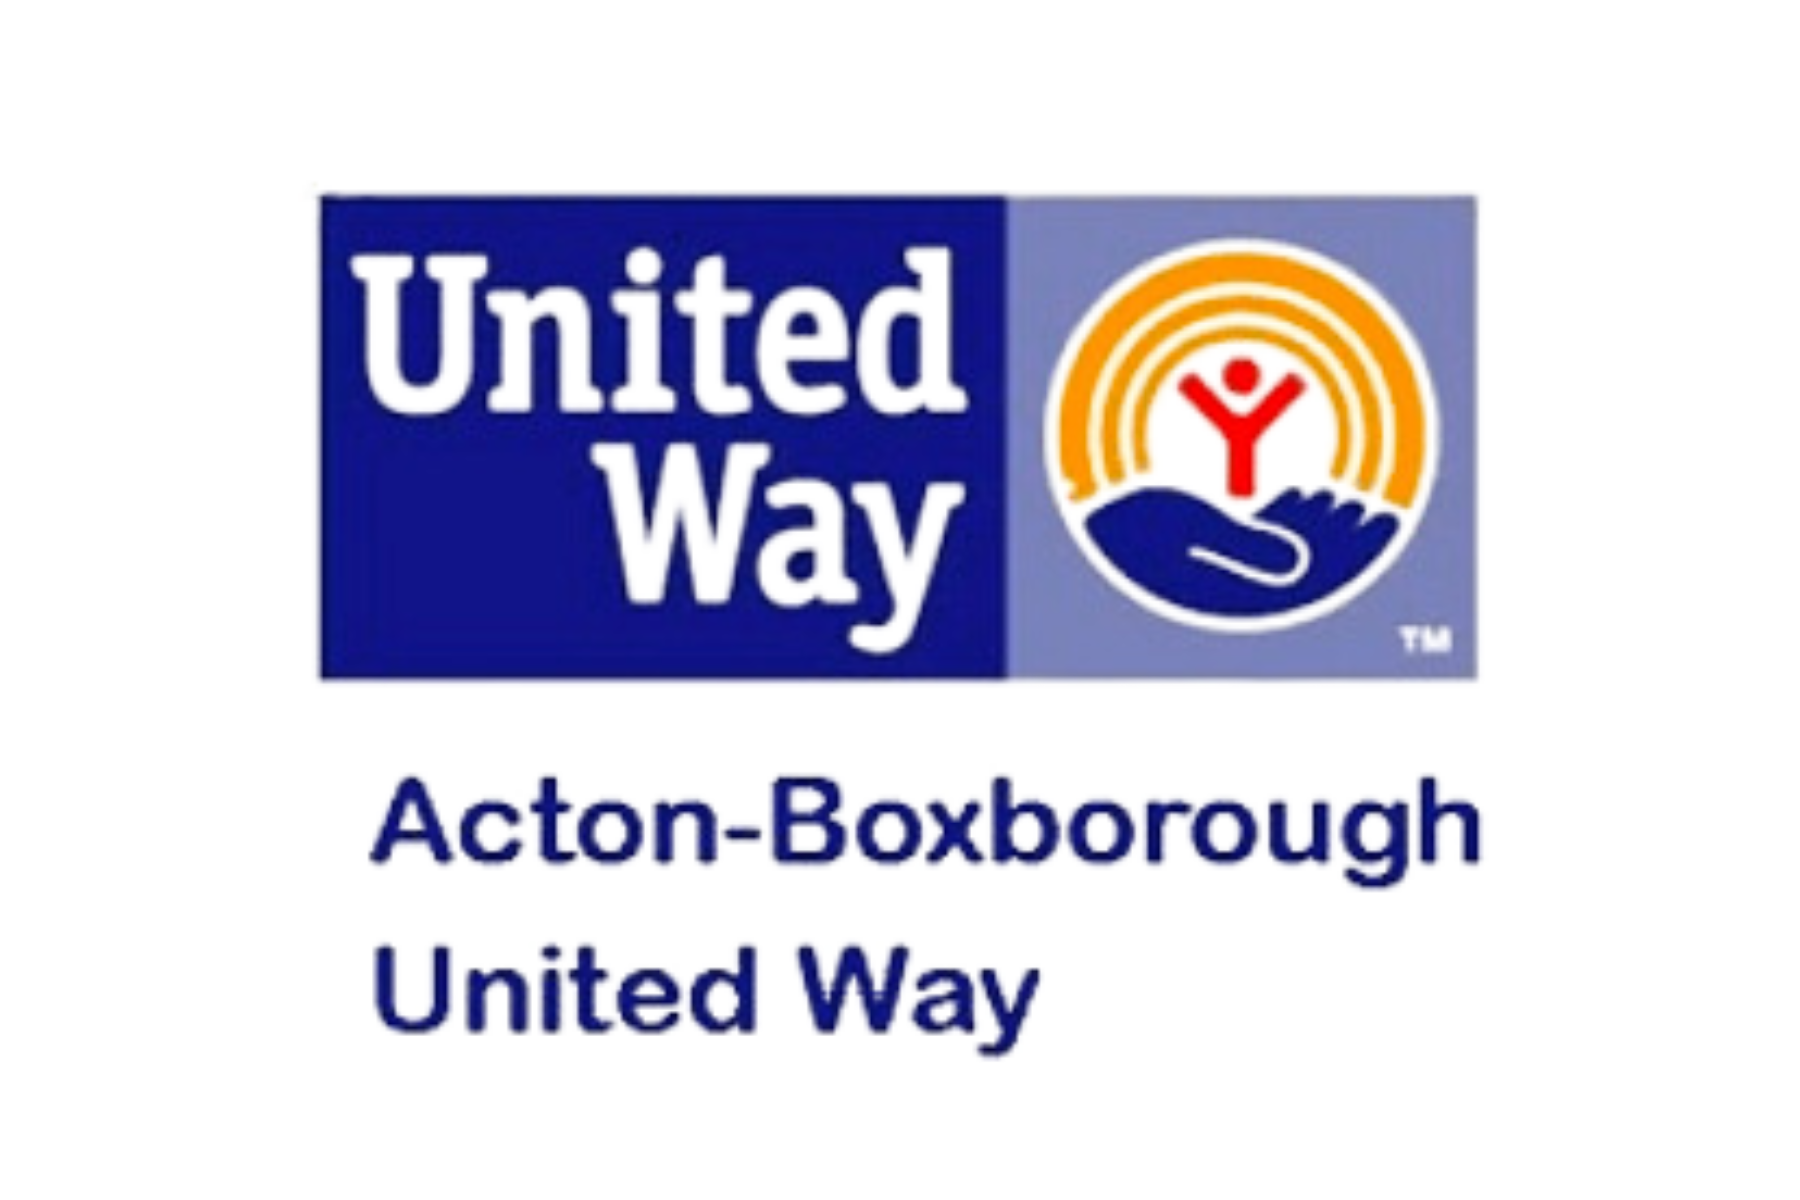 Acton-Boxborough United Way.